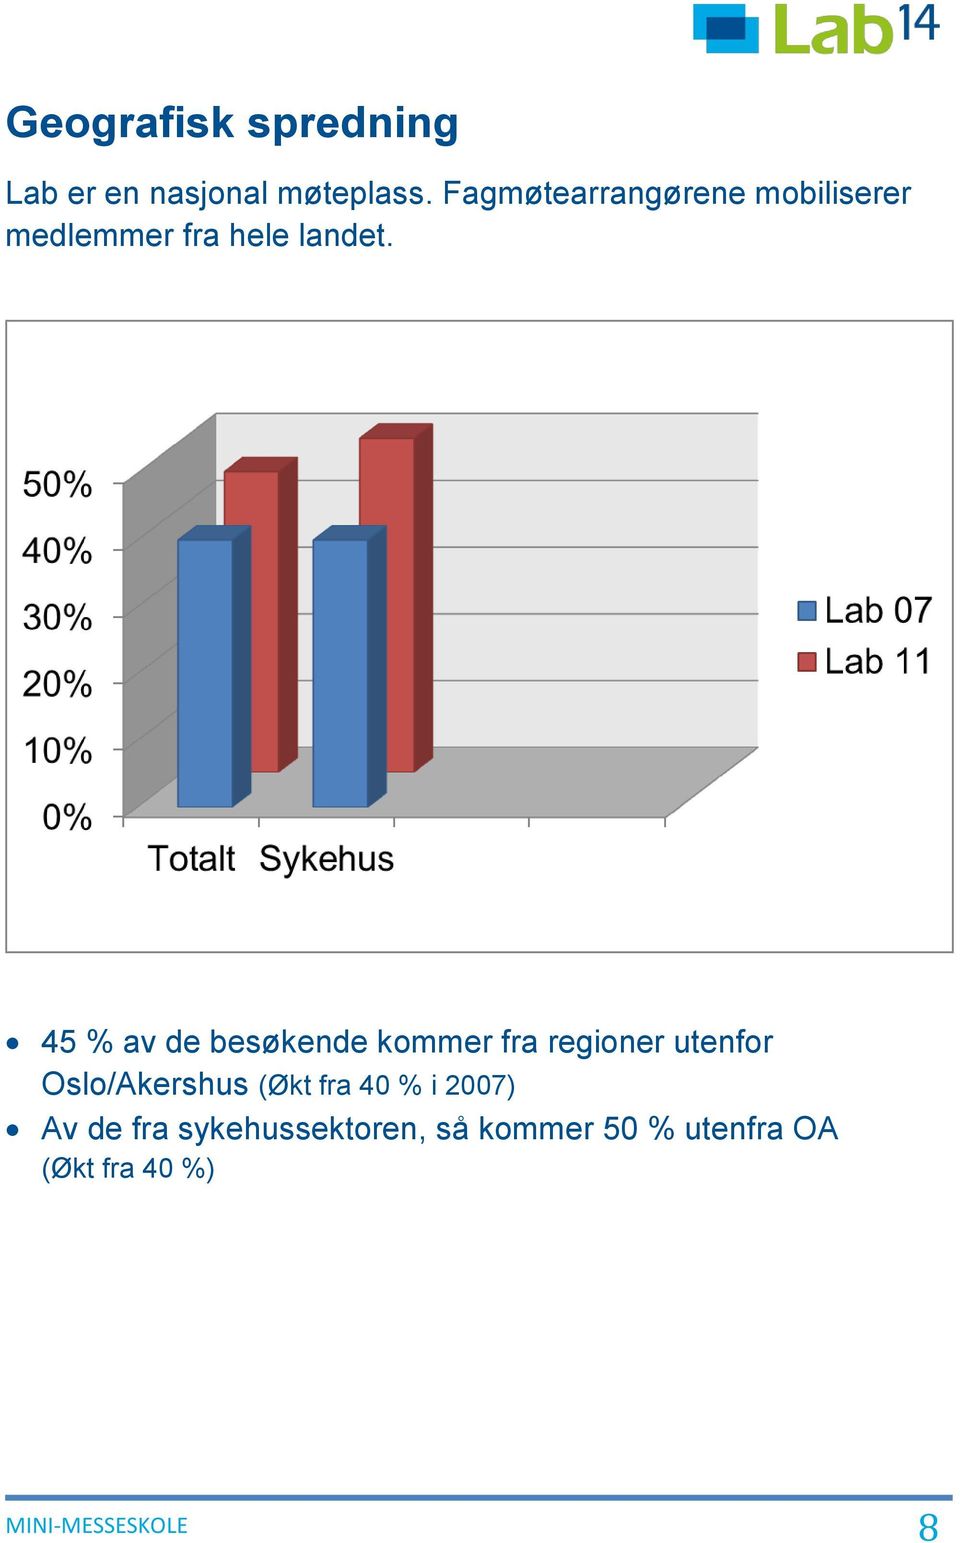 45 % av de besøkende kommer fra regioner utenfor Oslo/Akershus (Økt